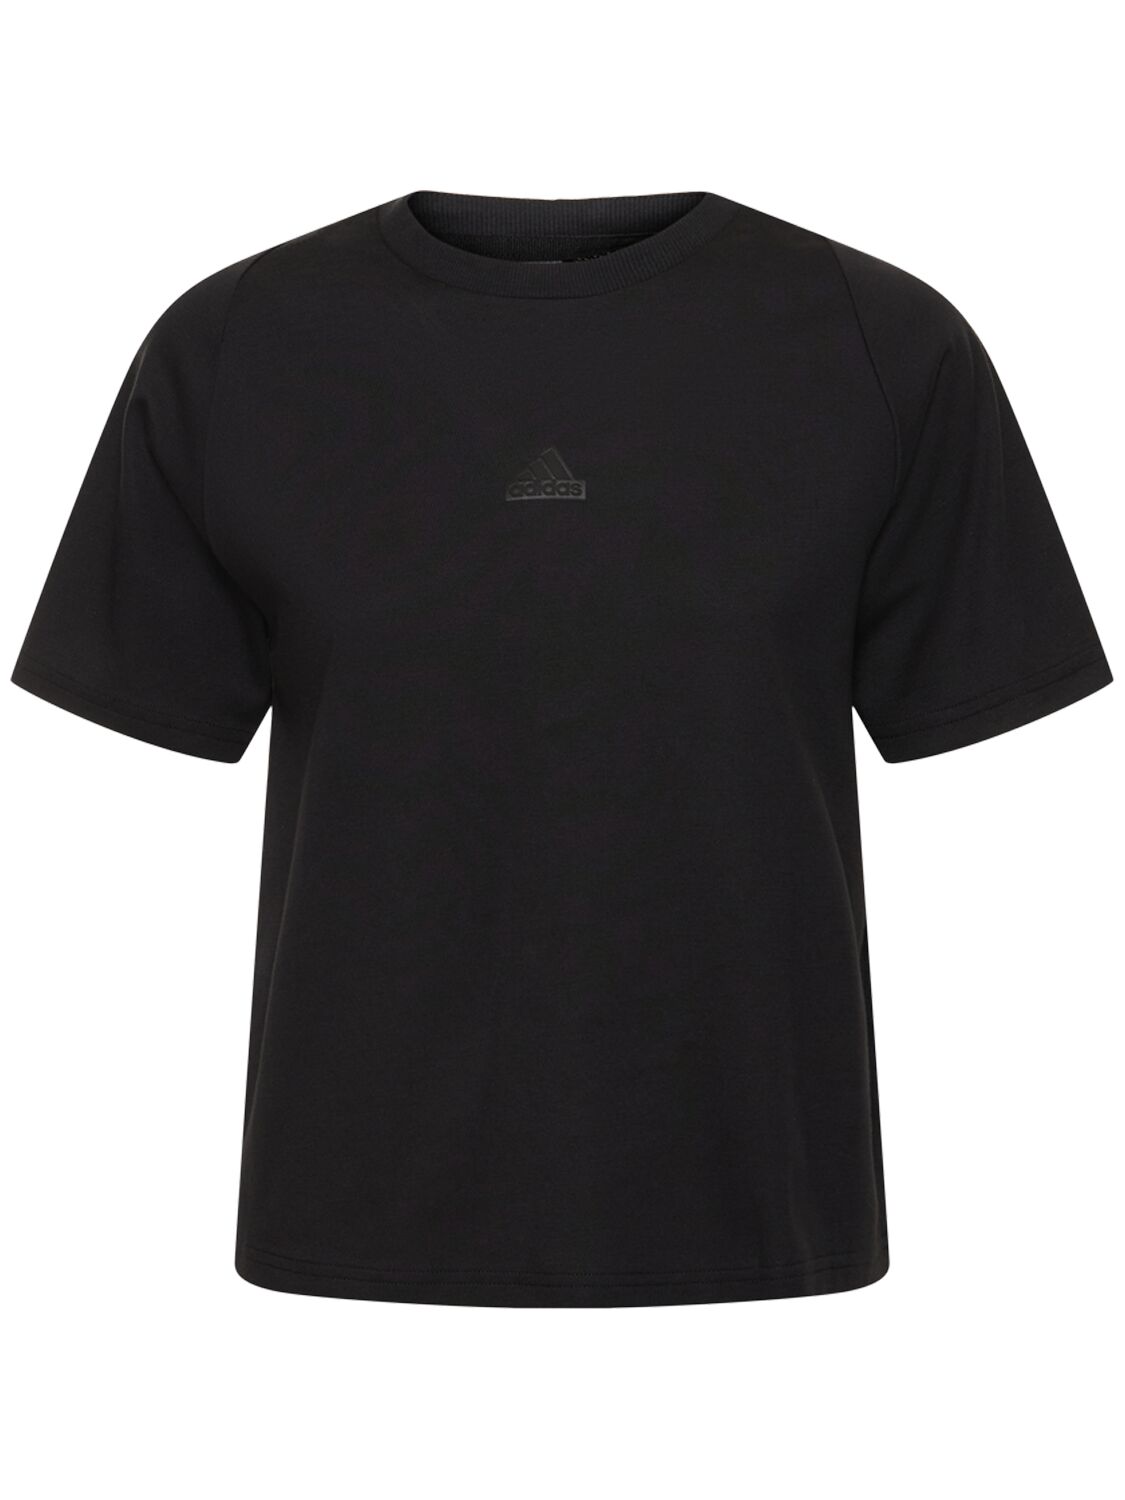 Adidas Originals Zone T恤 In Black